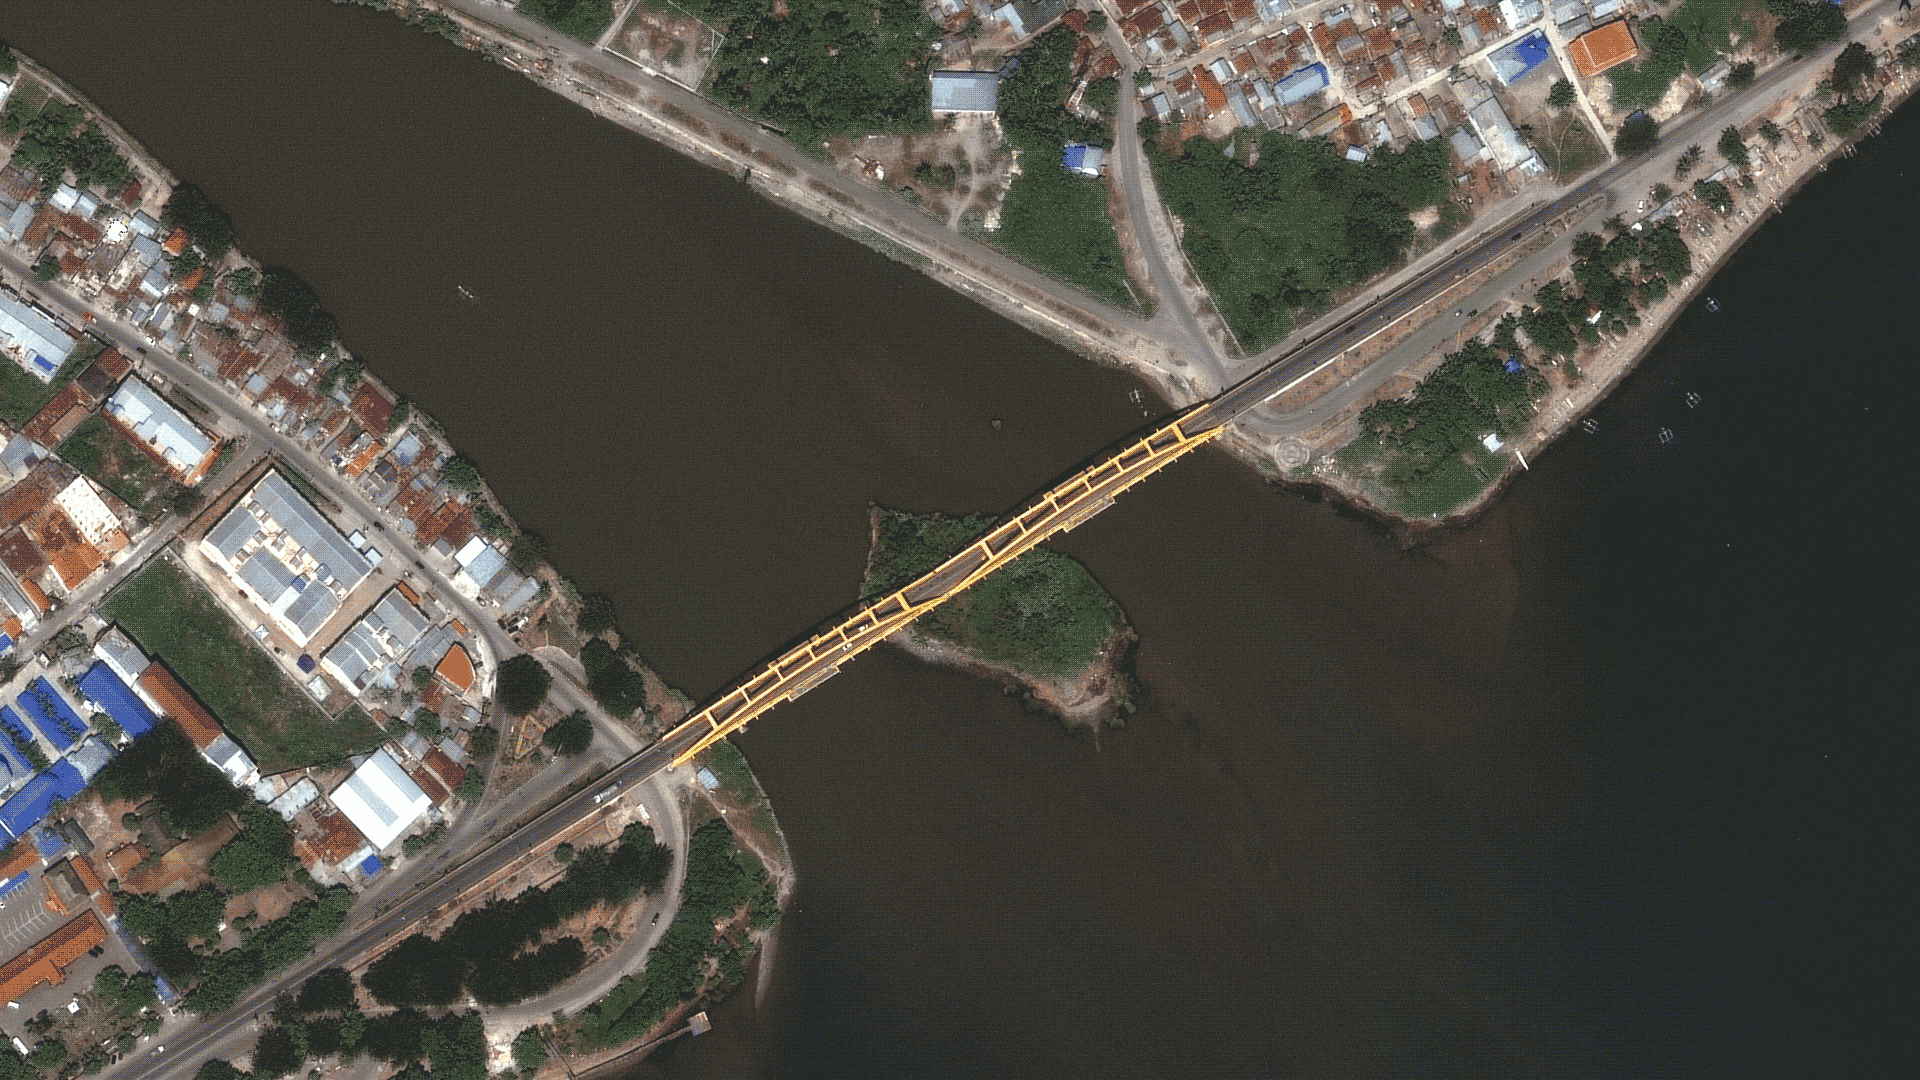 The tsunami destroyed the Jembalan Palu IV Bridge in Palu, Indonesia.